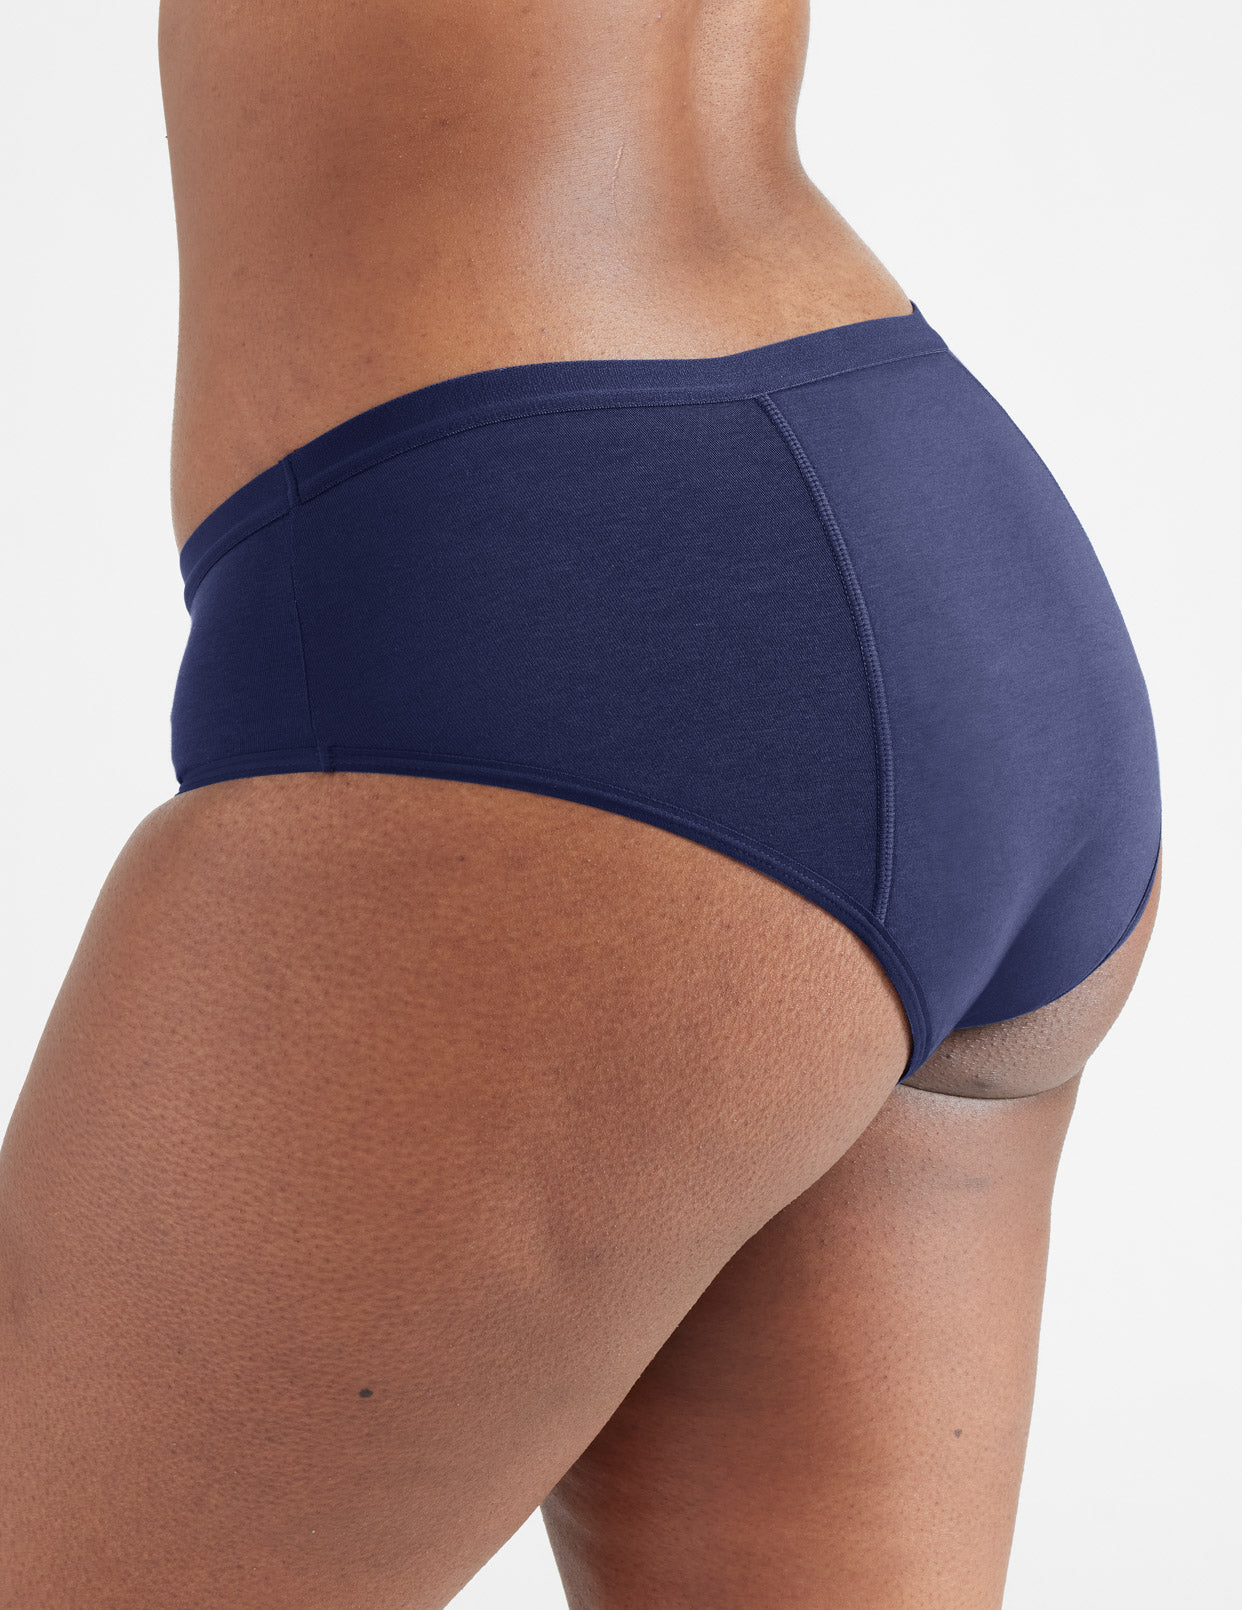 KNIX Luxe Modal Leakproof Bikini - Period Underwear for Women